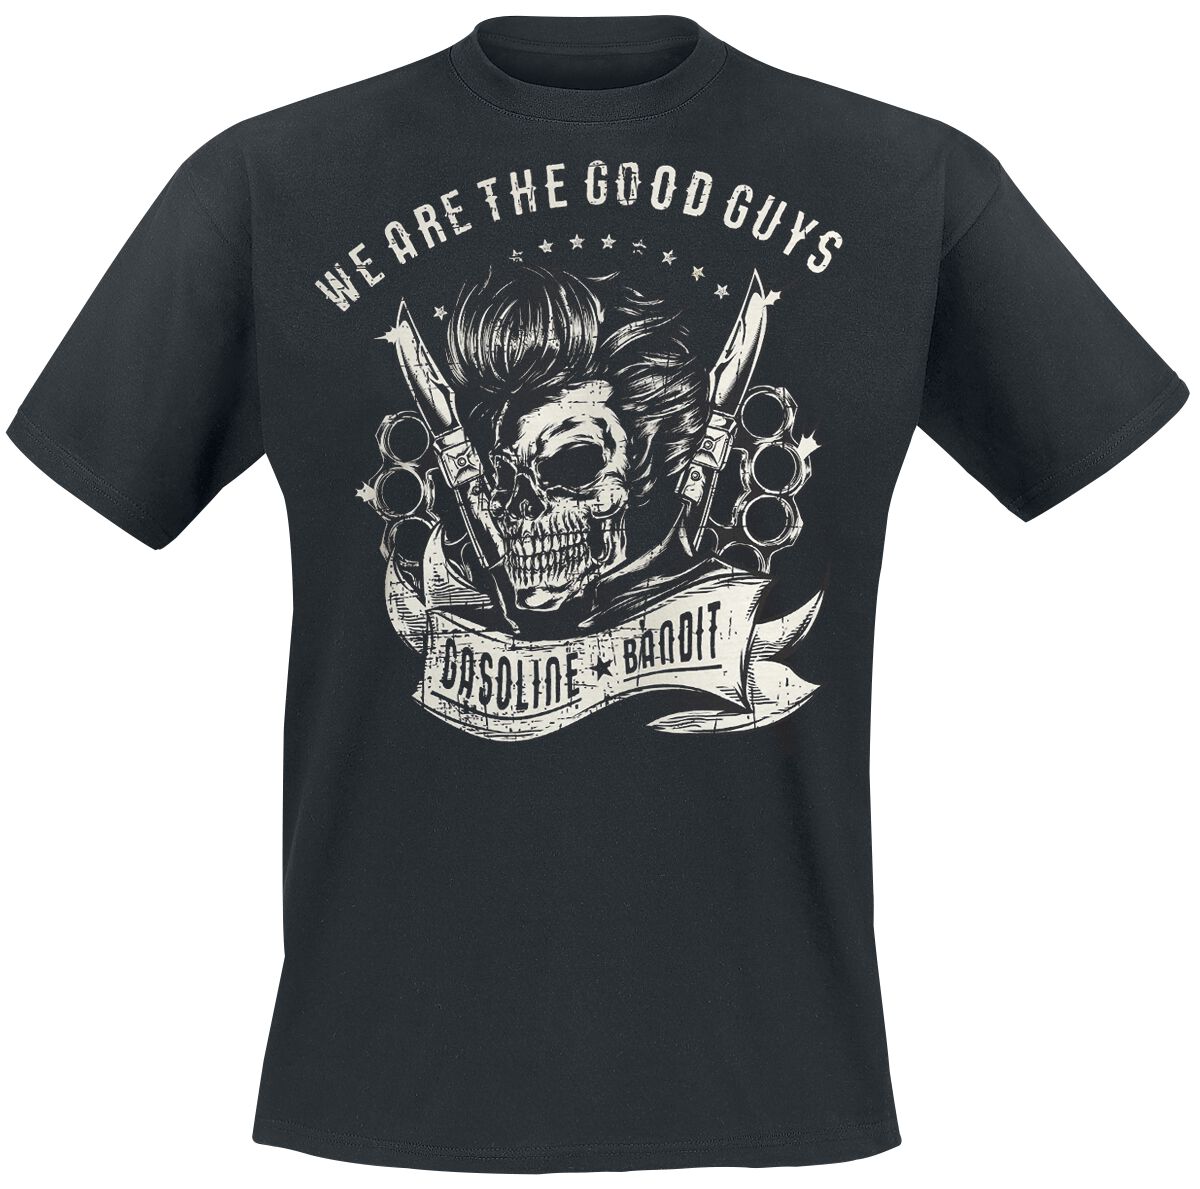 Gasoline Bandit - Rockabilly T-Shirt - We Are The Good Guys - S bis XXL - für Männer - Größe XL - schwarz